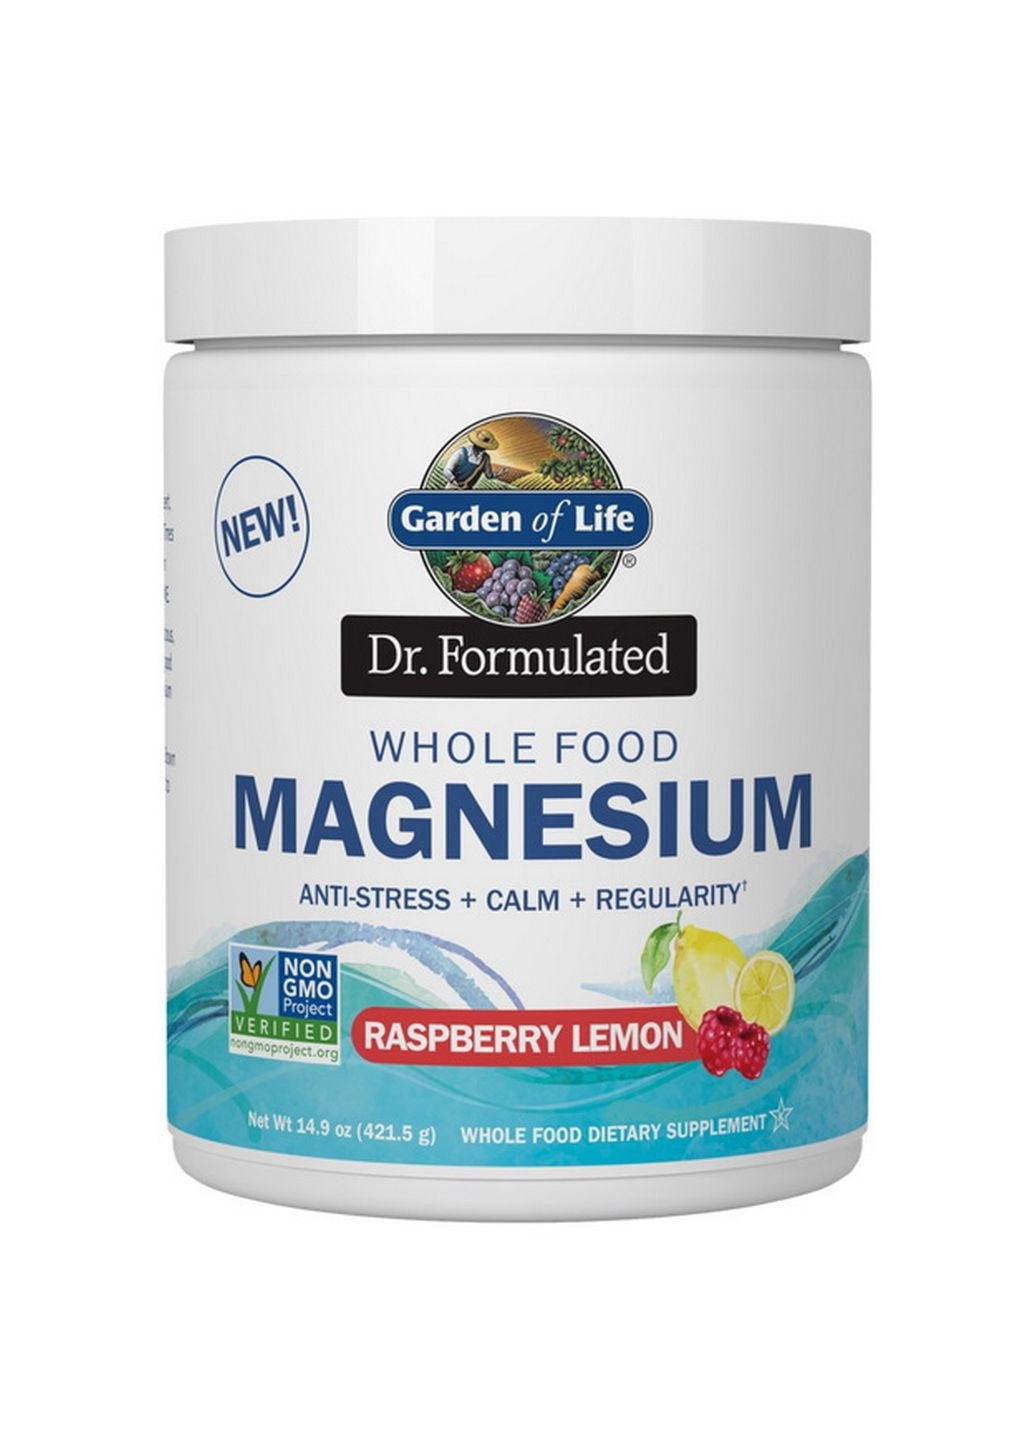 Витамины и минералы Dr. Formulated Whole Food Magnesium, 420 грамм Лимон-малина (421 грамм) Garden of Life (293478271)